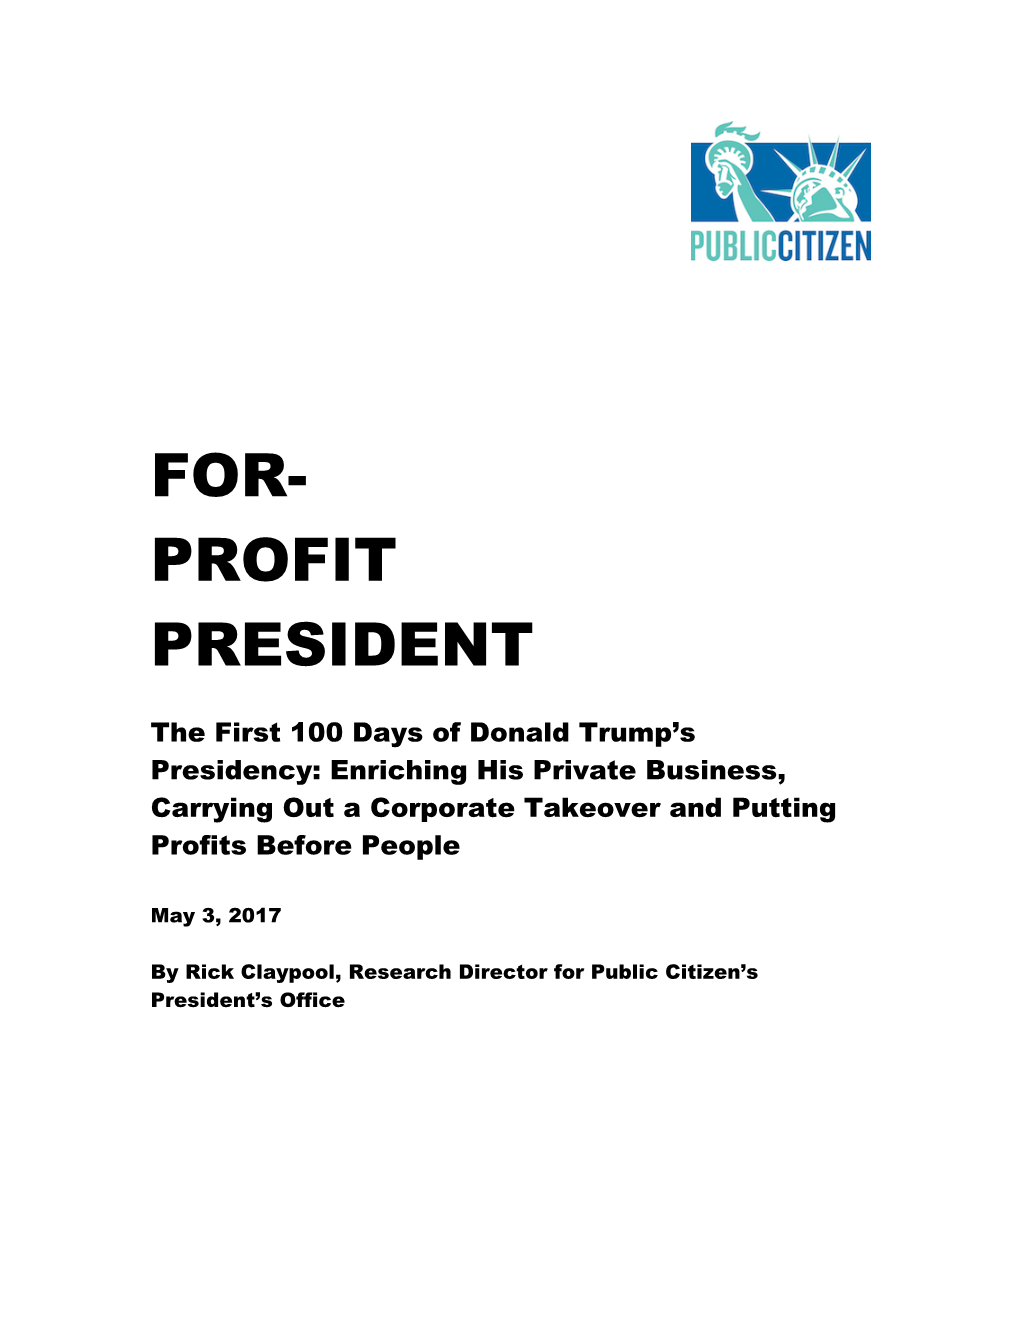 For- Profit President